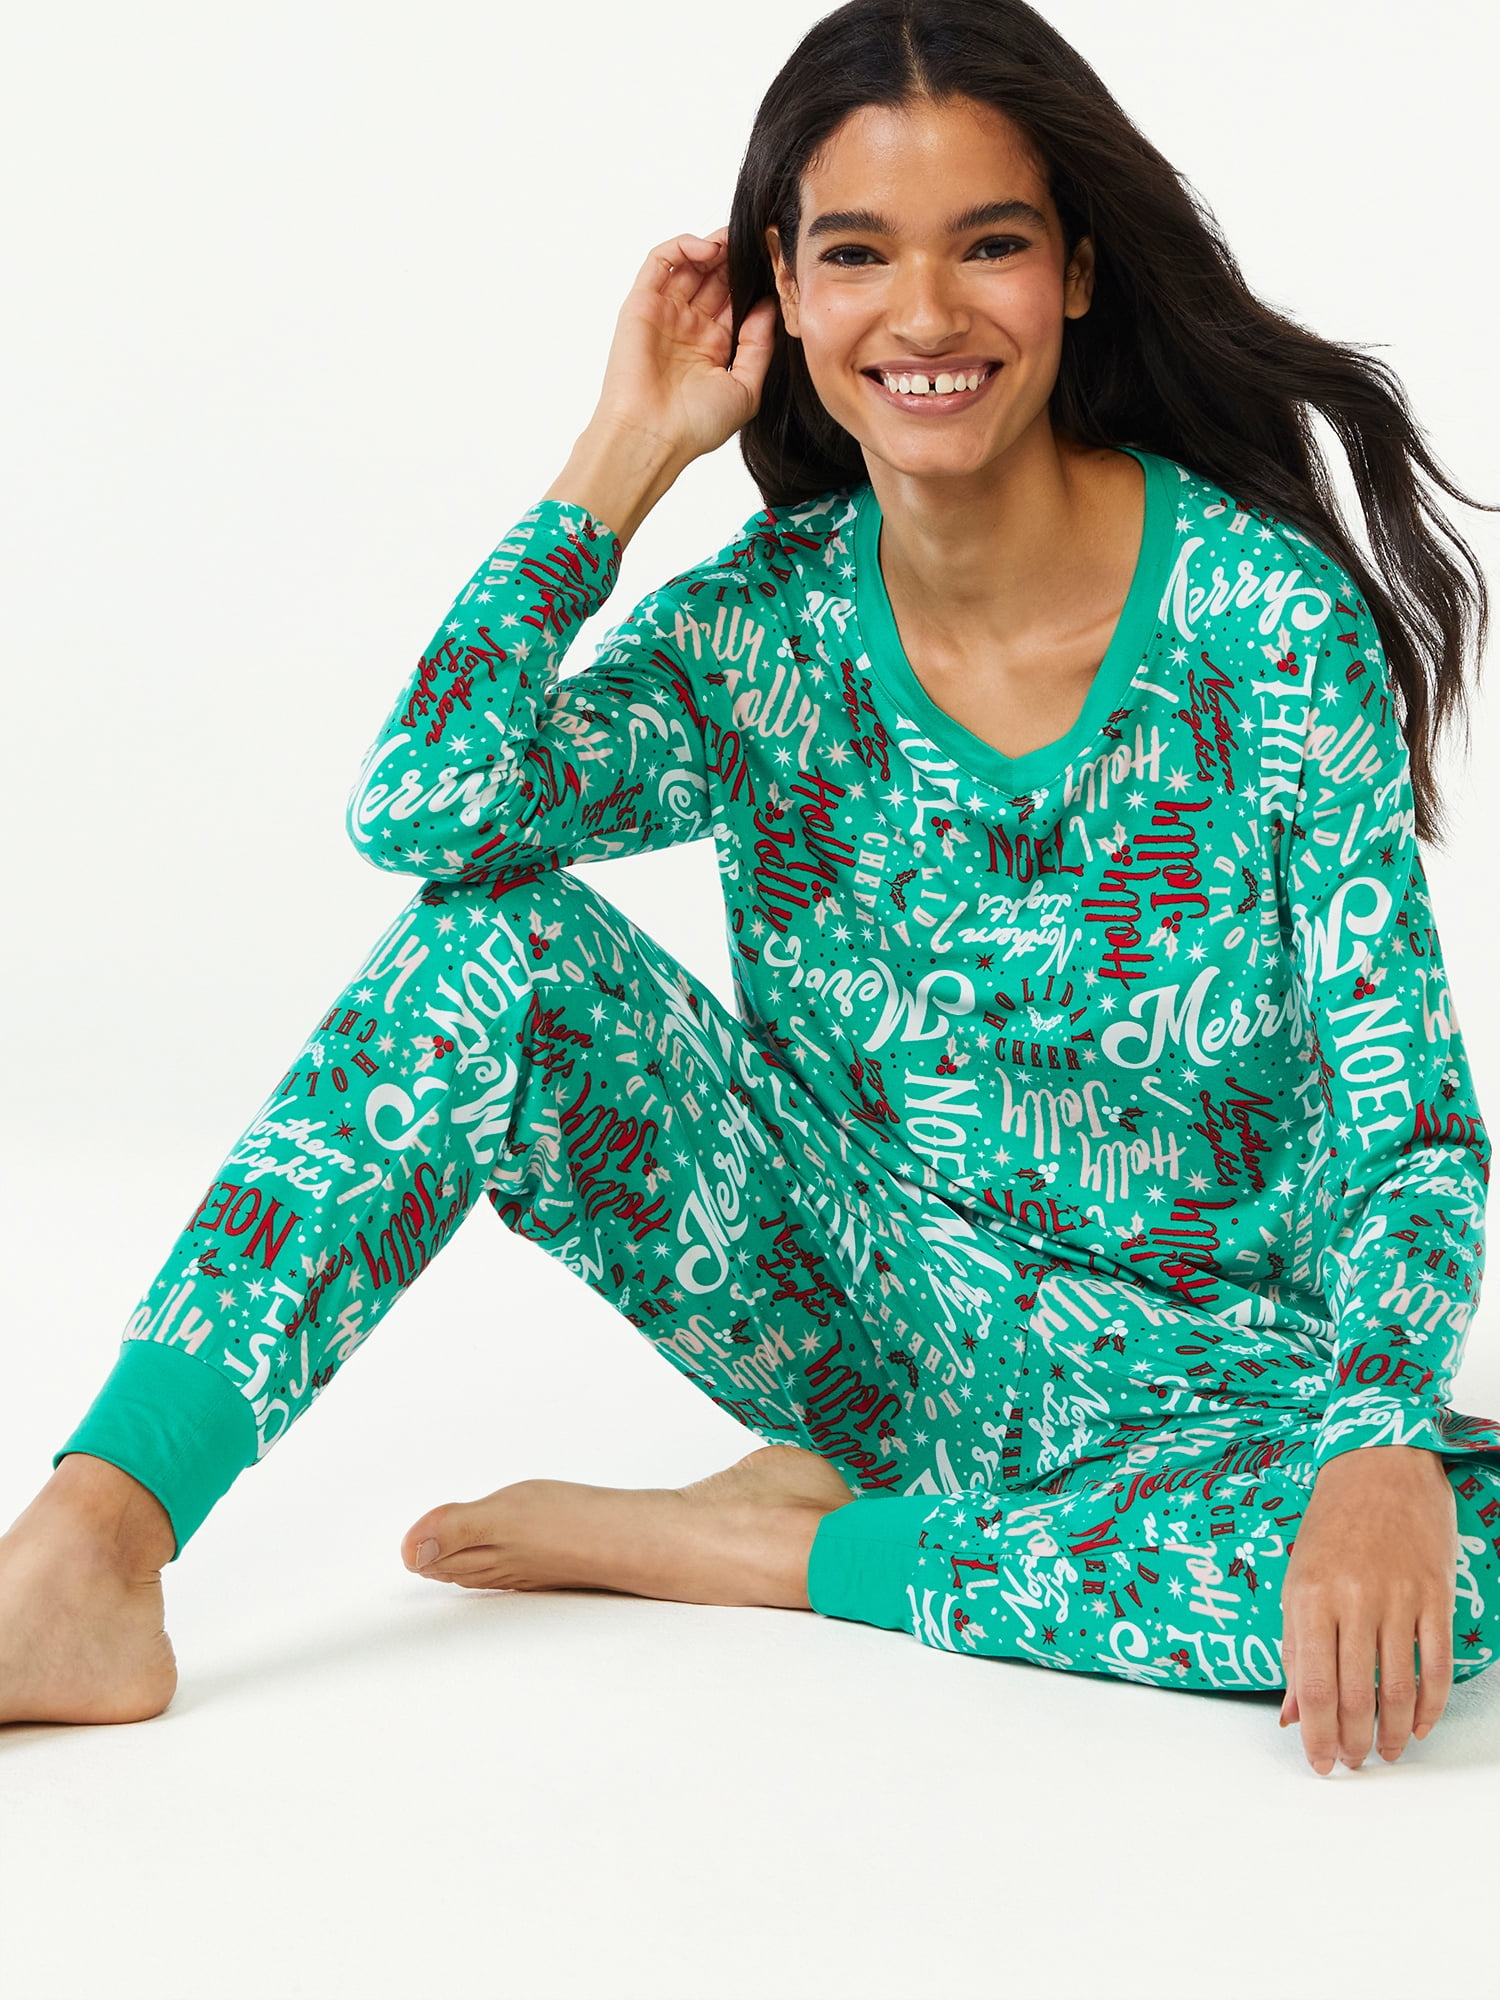 Pajamas & Pajama Sets for Women